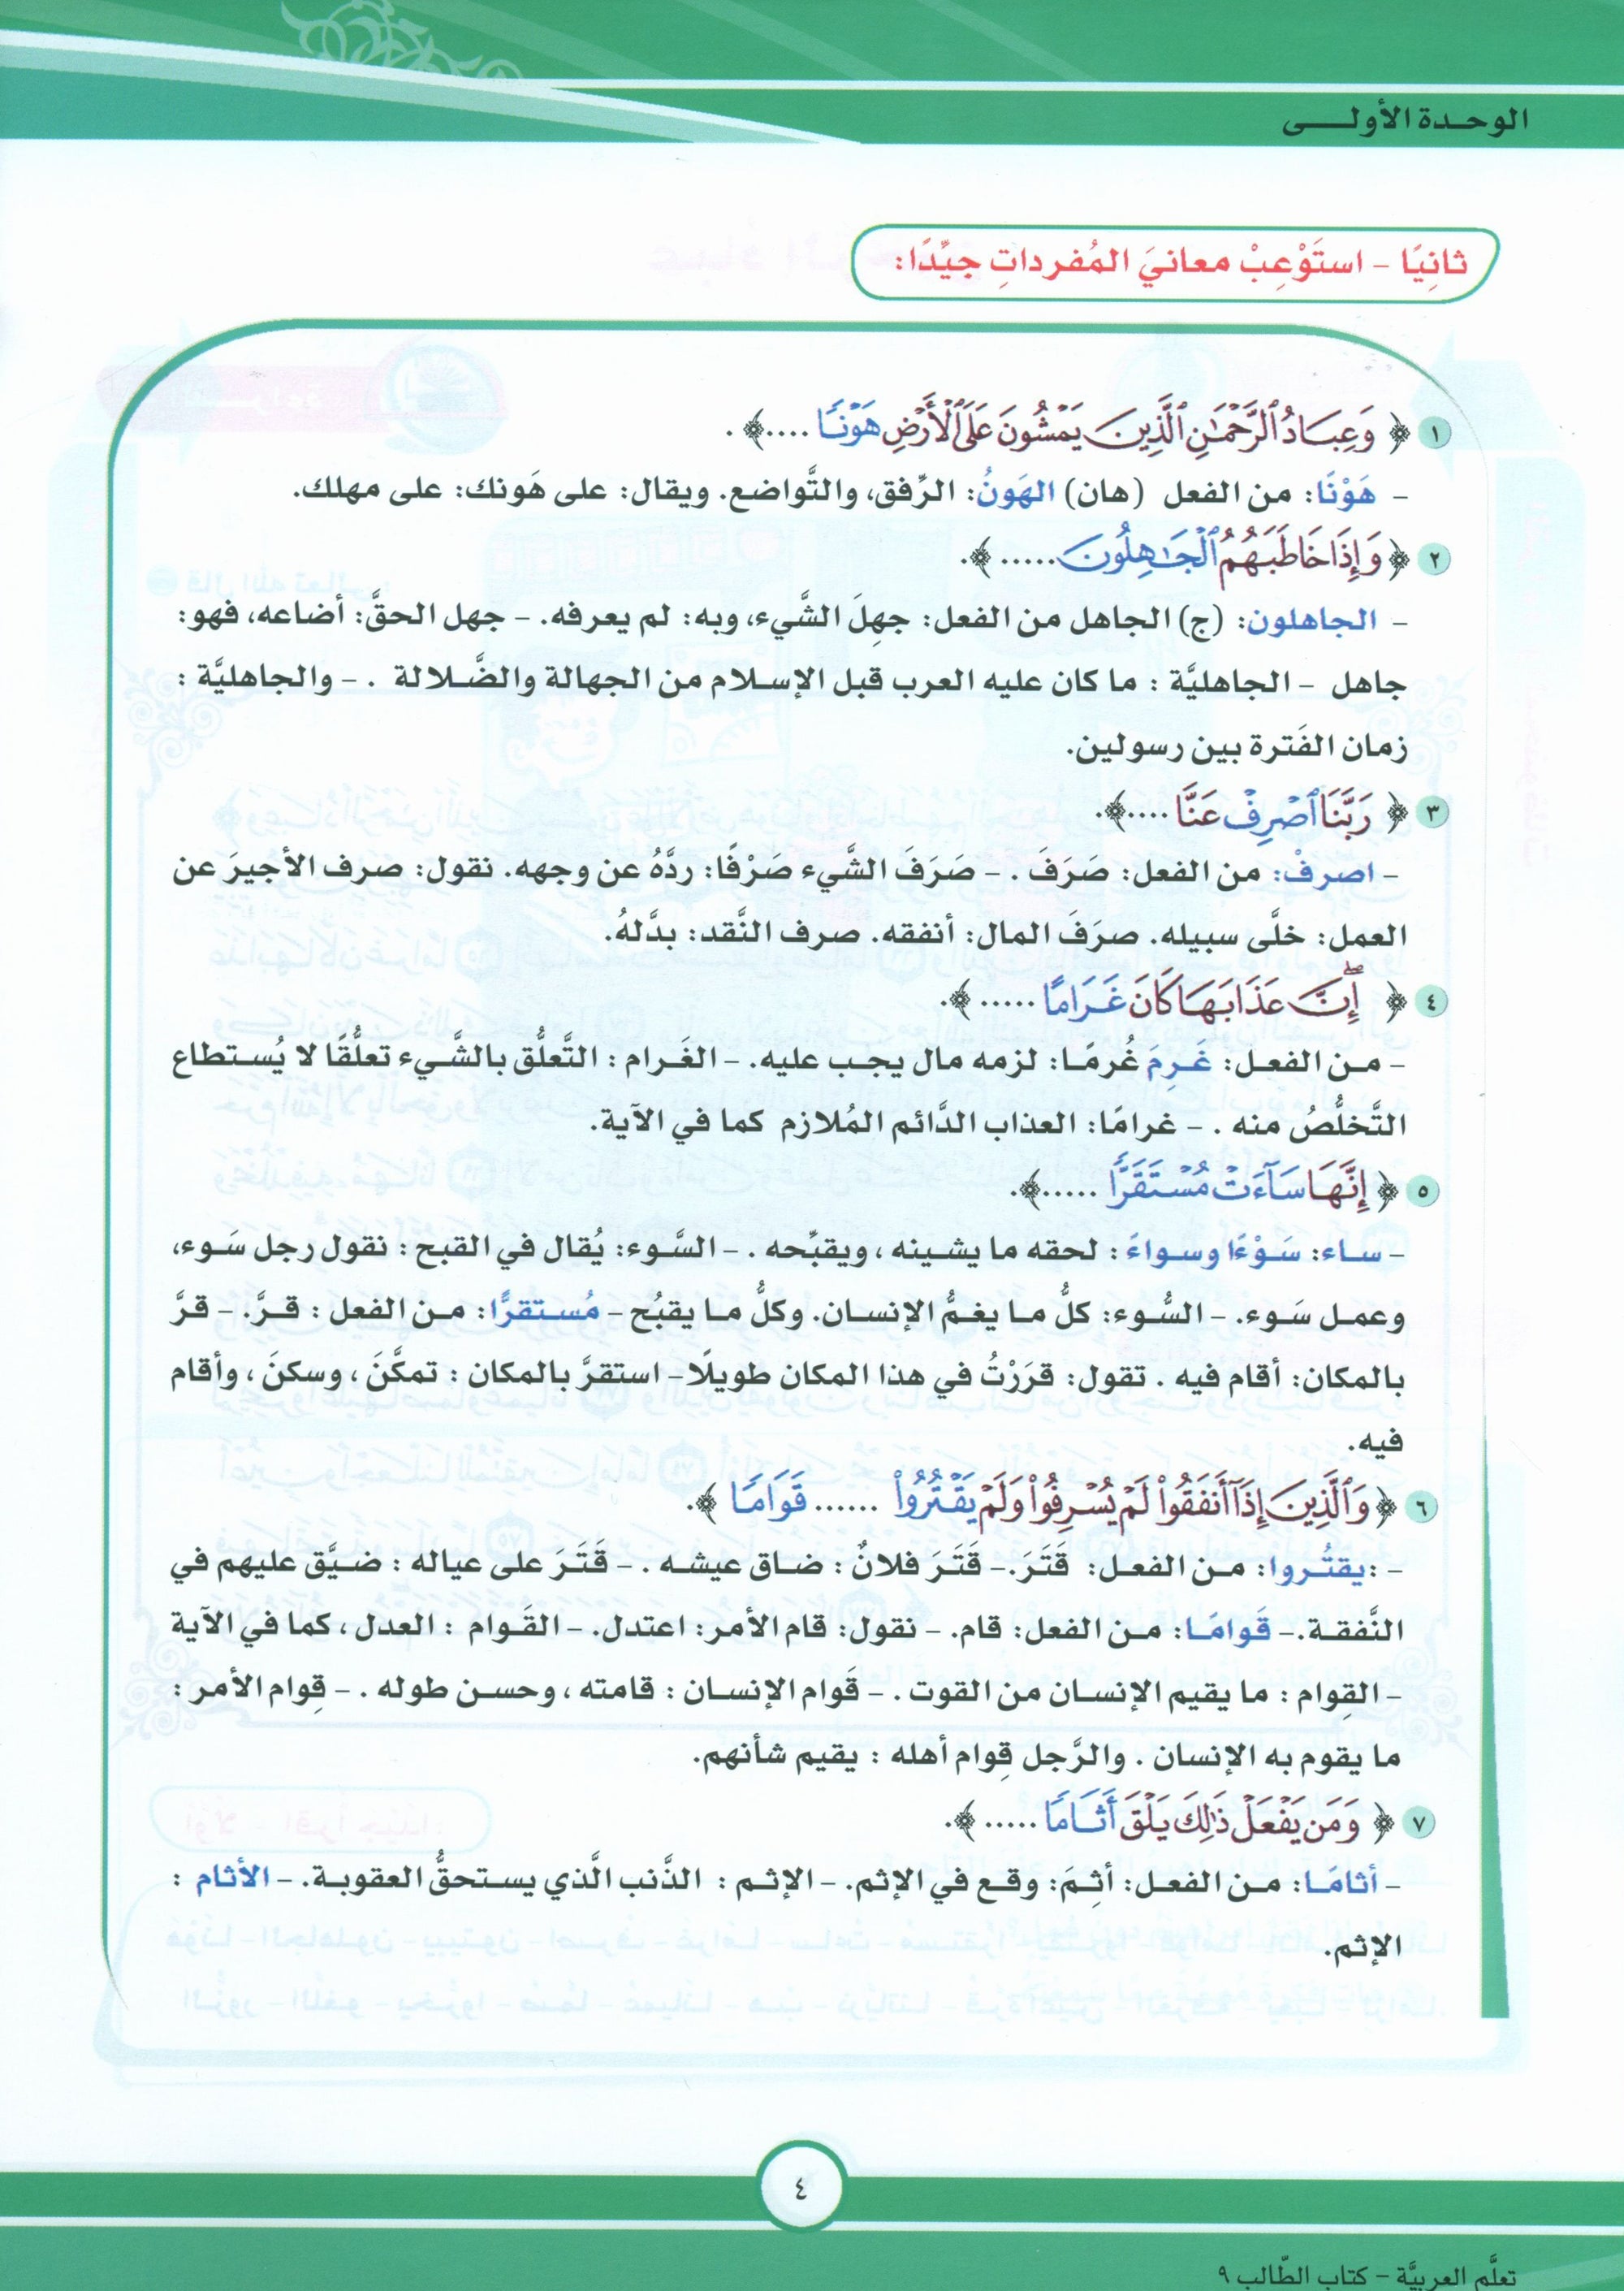 ICO Learn Arabic Textbook Level 9 Part 1 تعلم العربية كتاب التلميذ